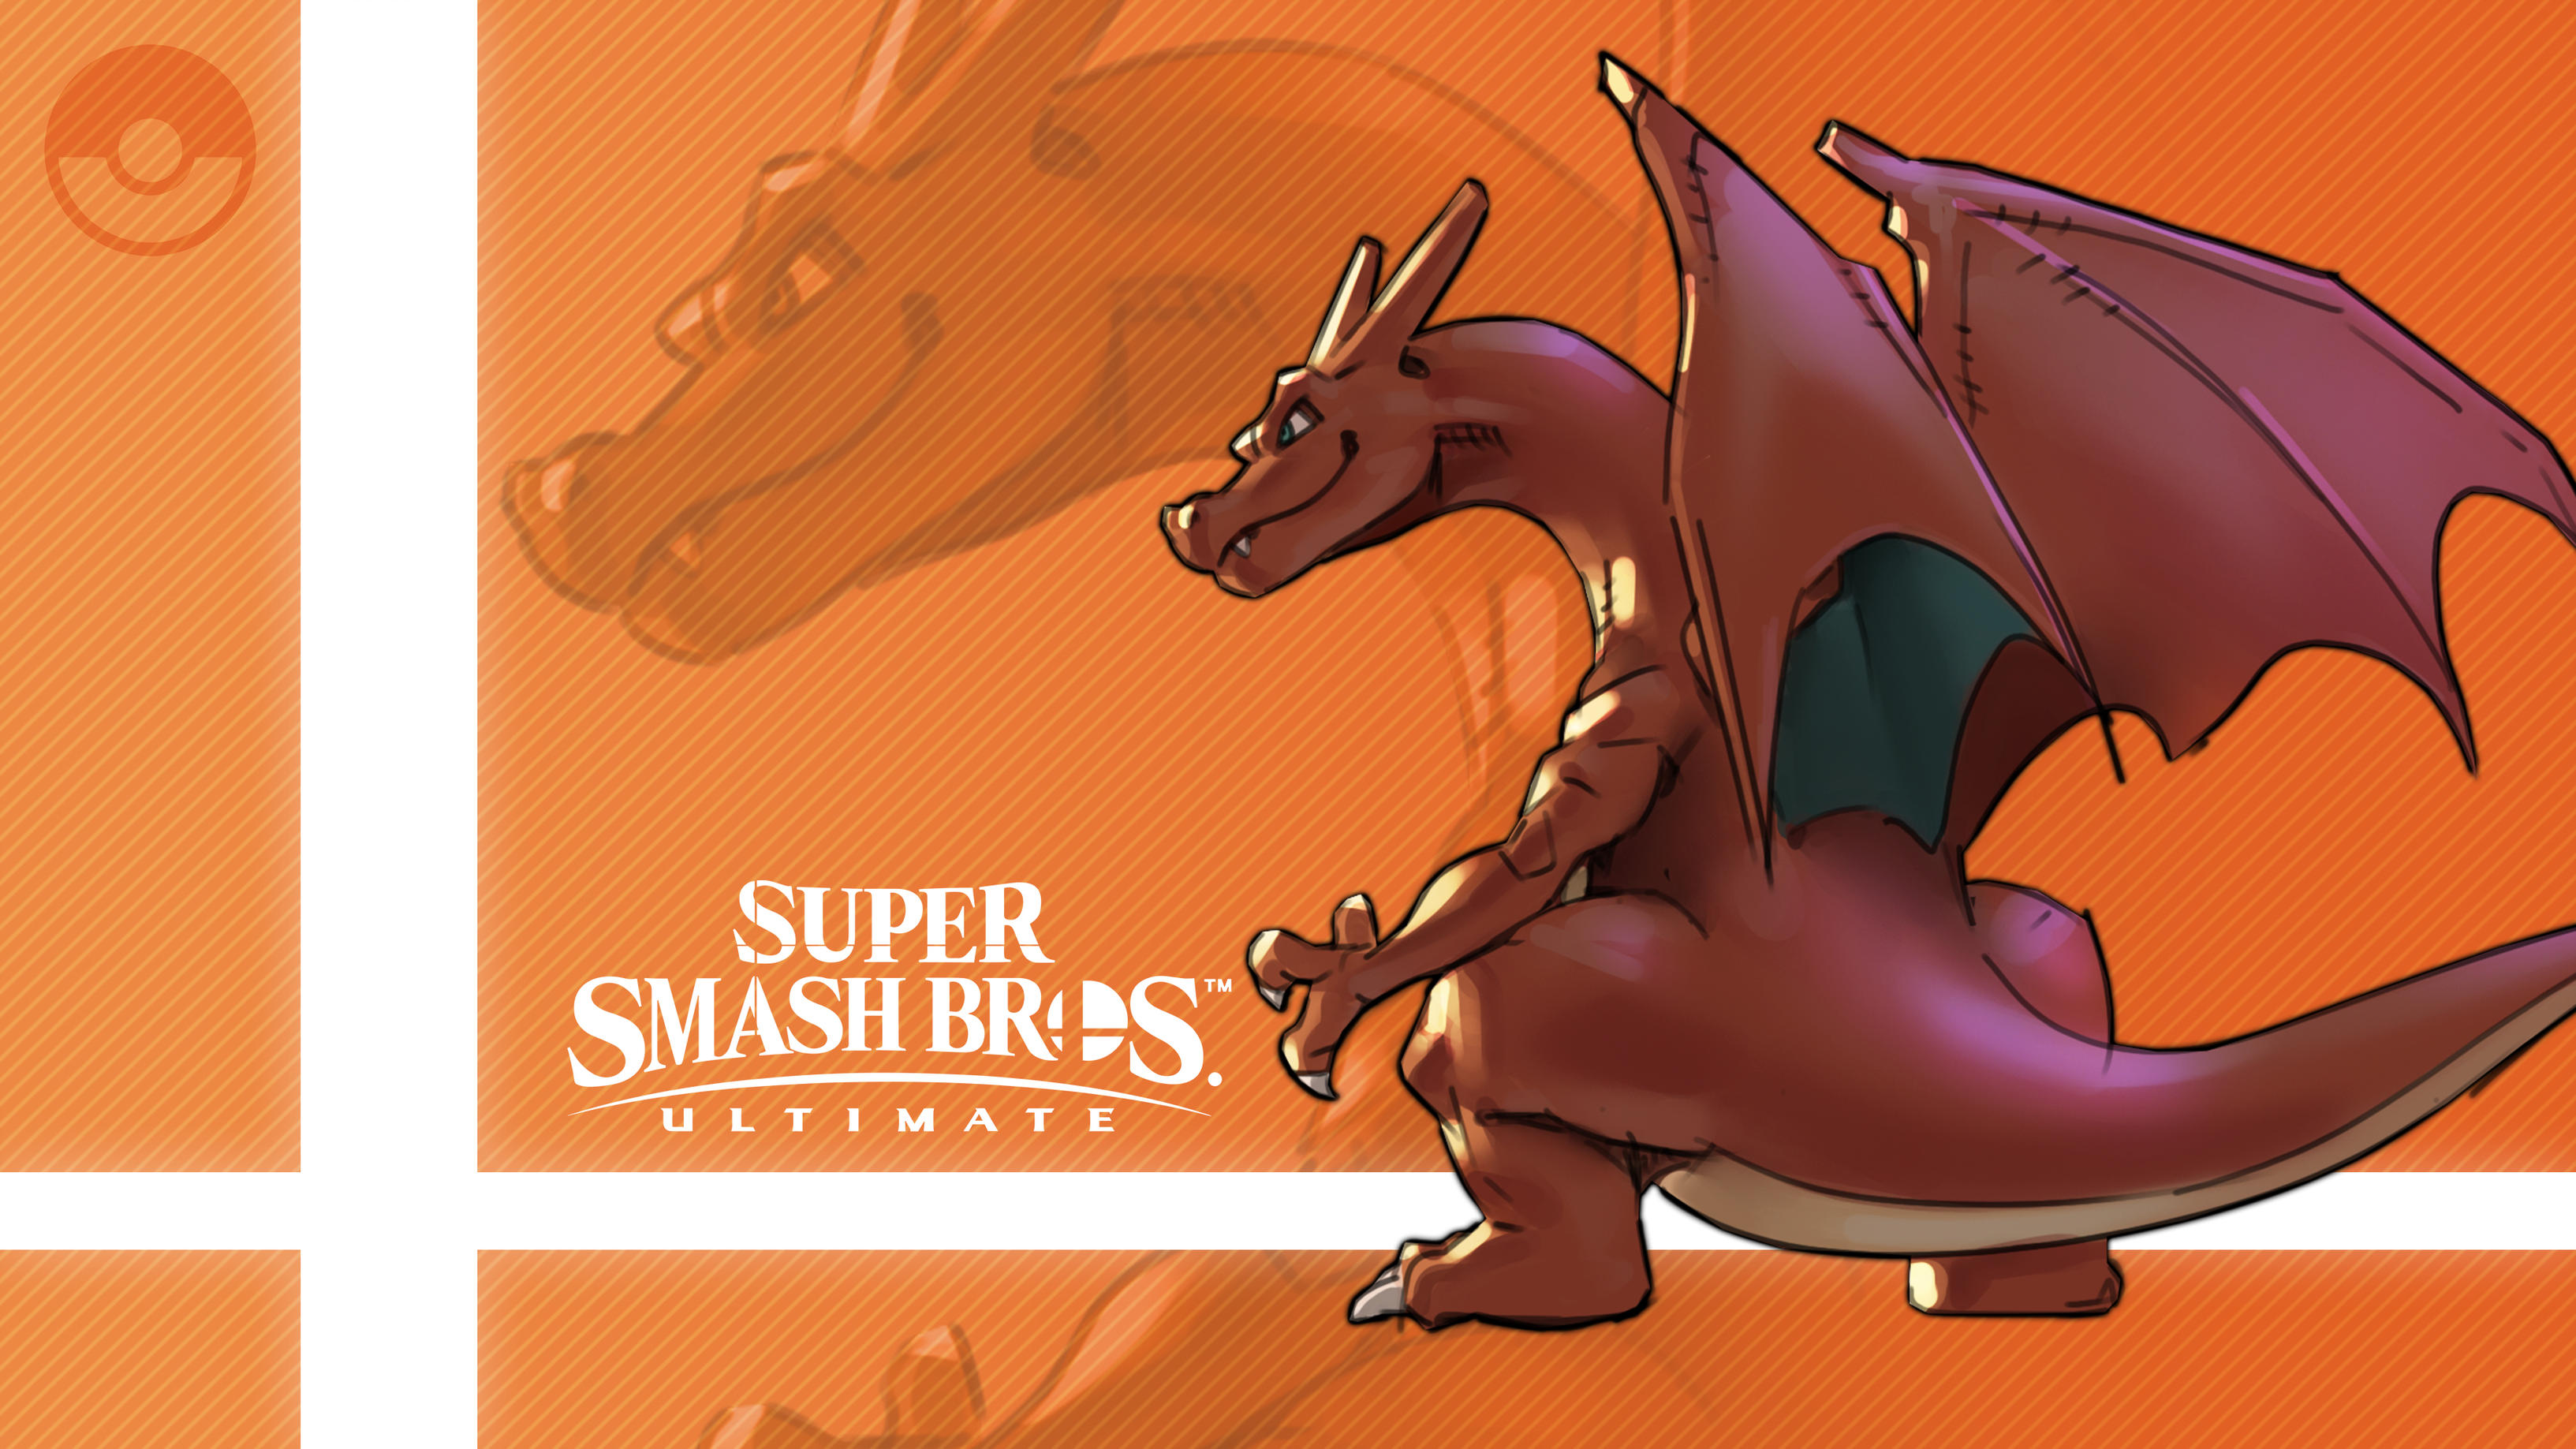 Charizard Pokemon Super Smash Bros Ultimate 3266x1837